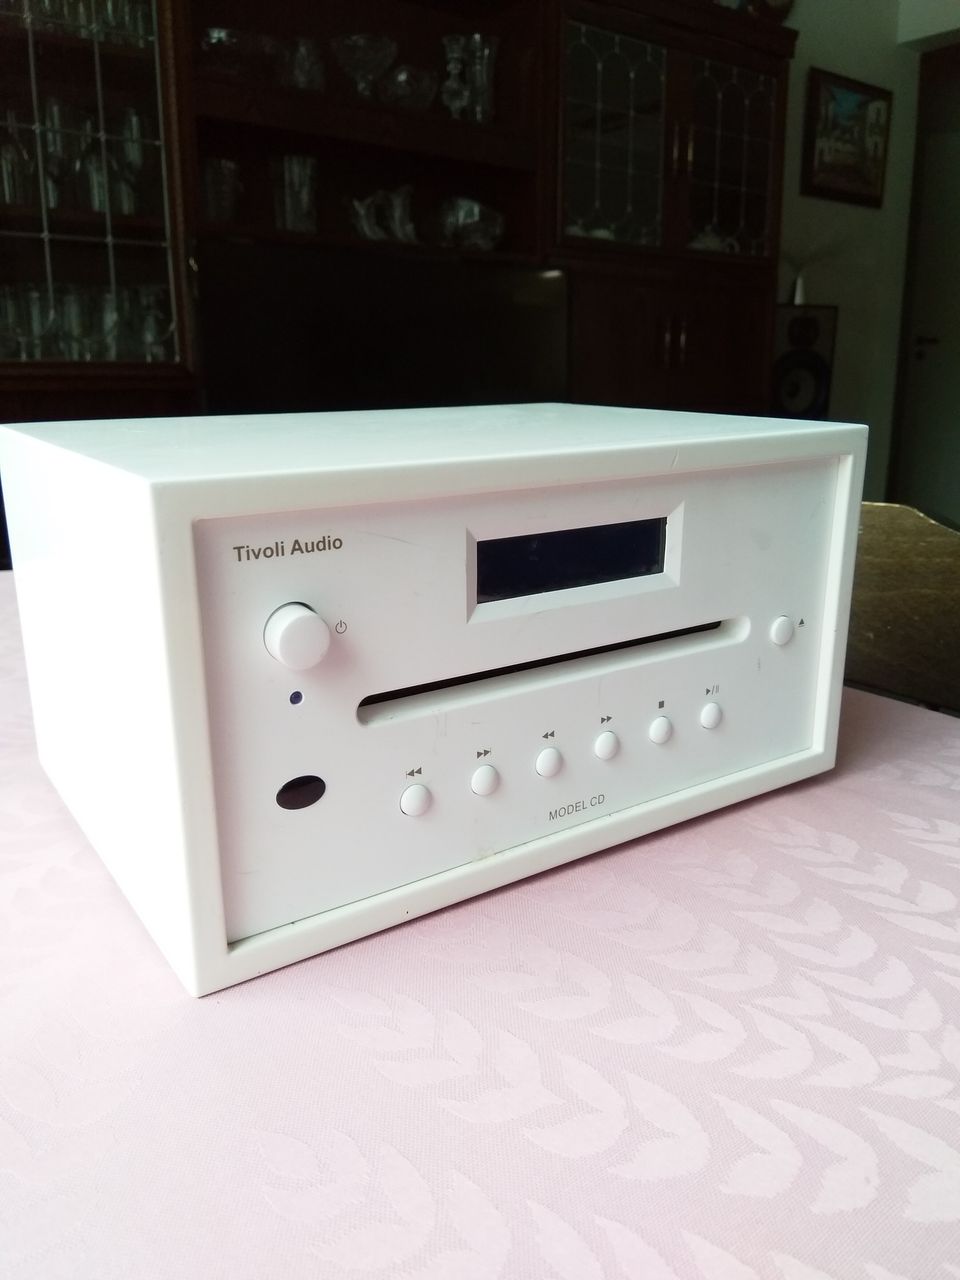 Tivoli Audio Model CD